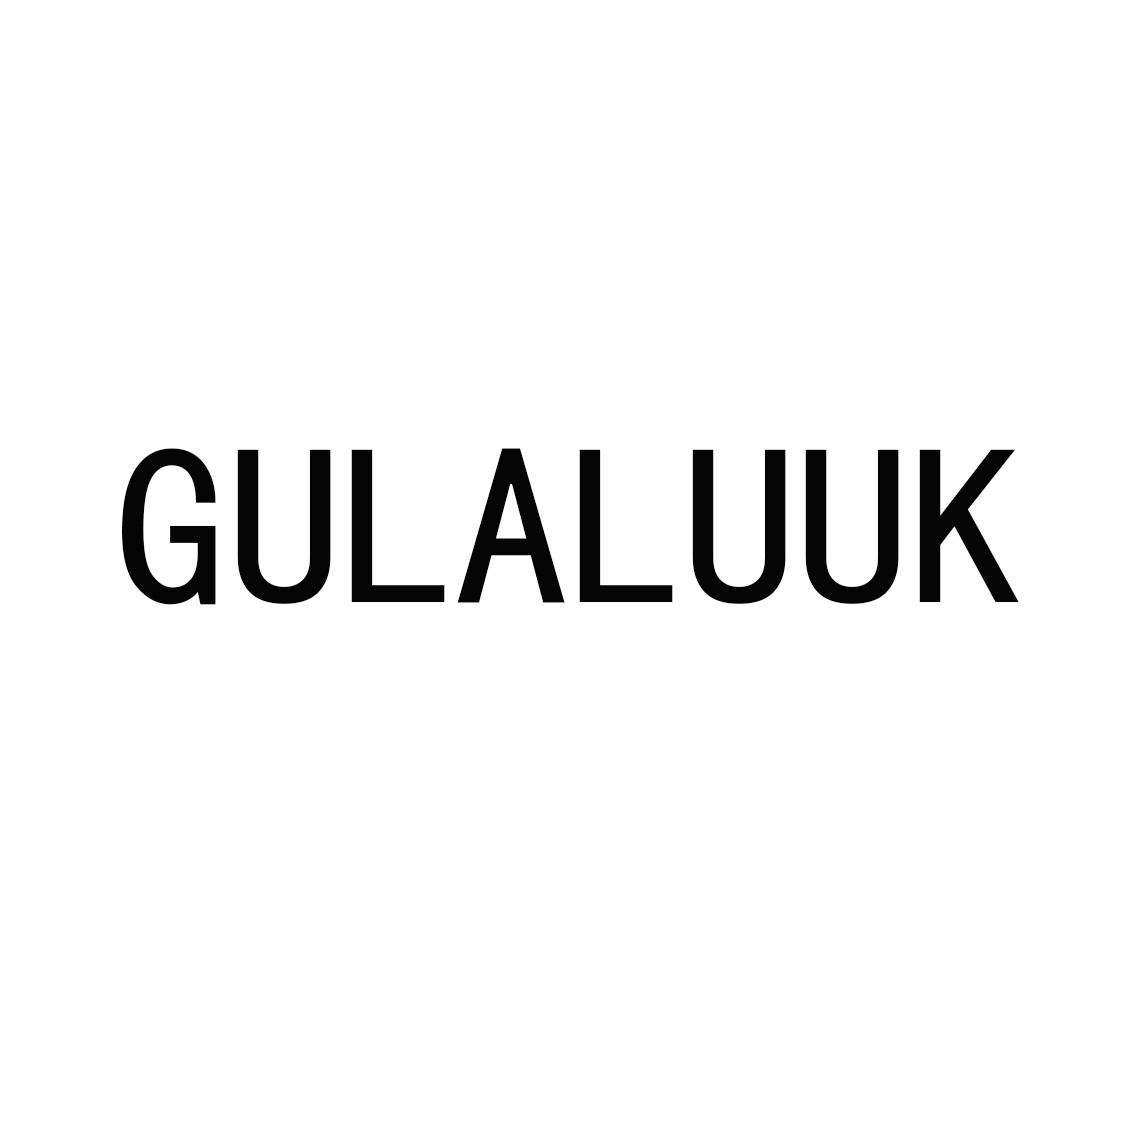 GULALUUK 商标公告